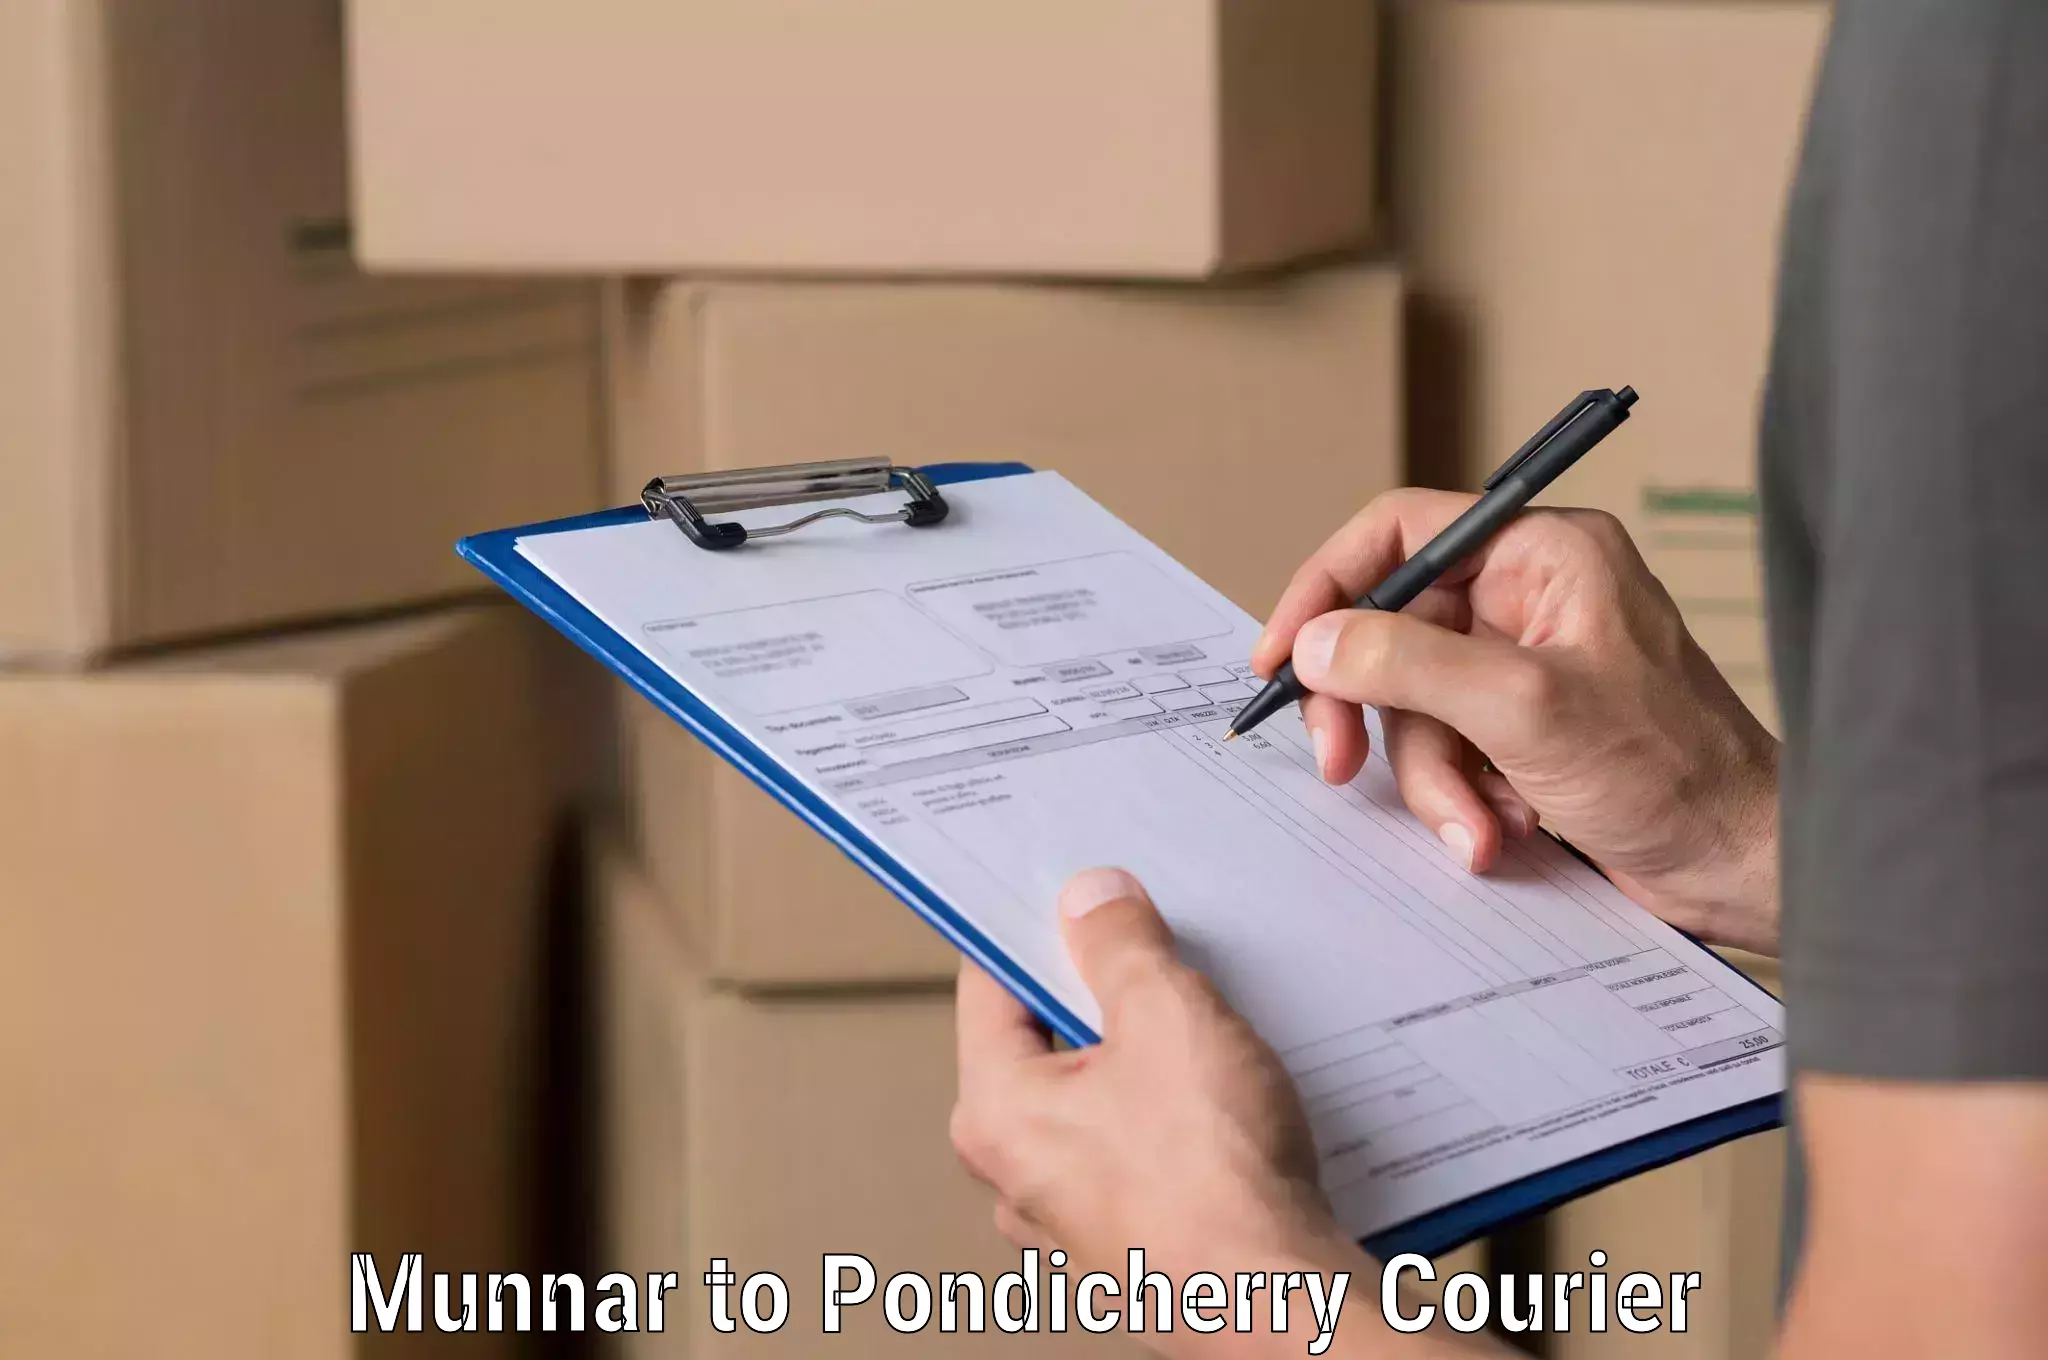 Door-to-door freight service Munnar to Pondicherry